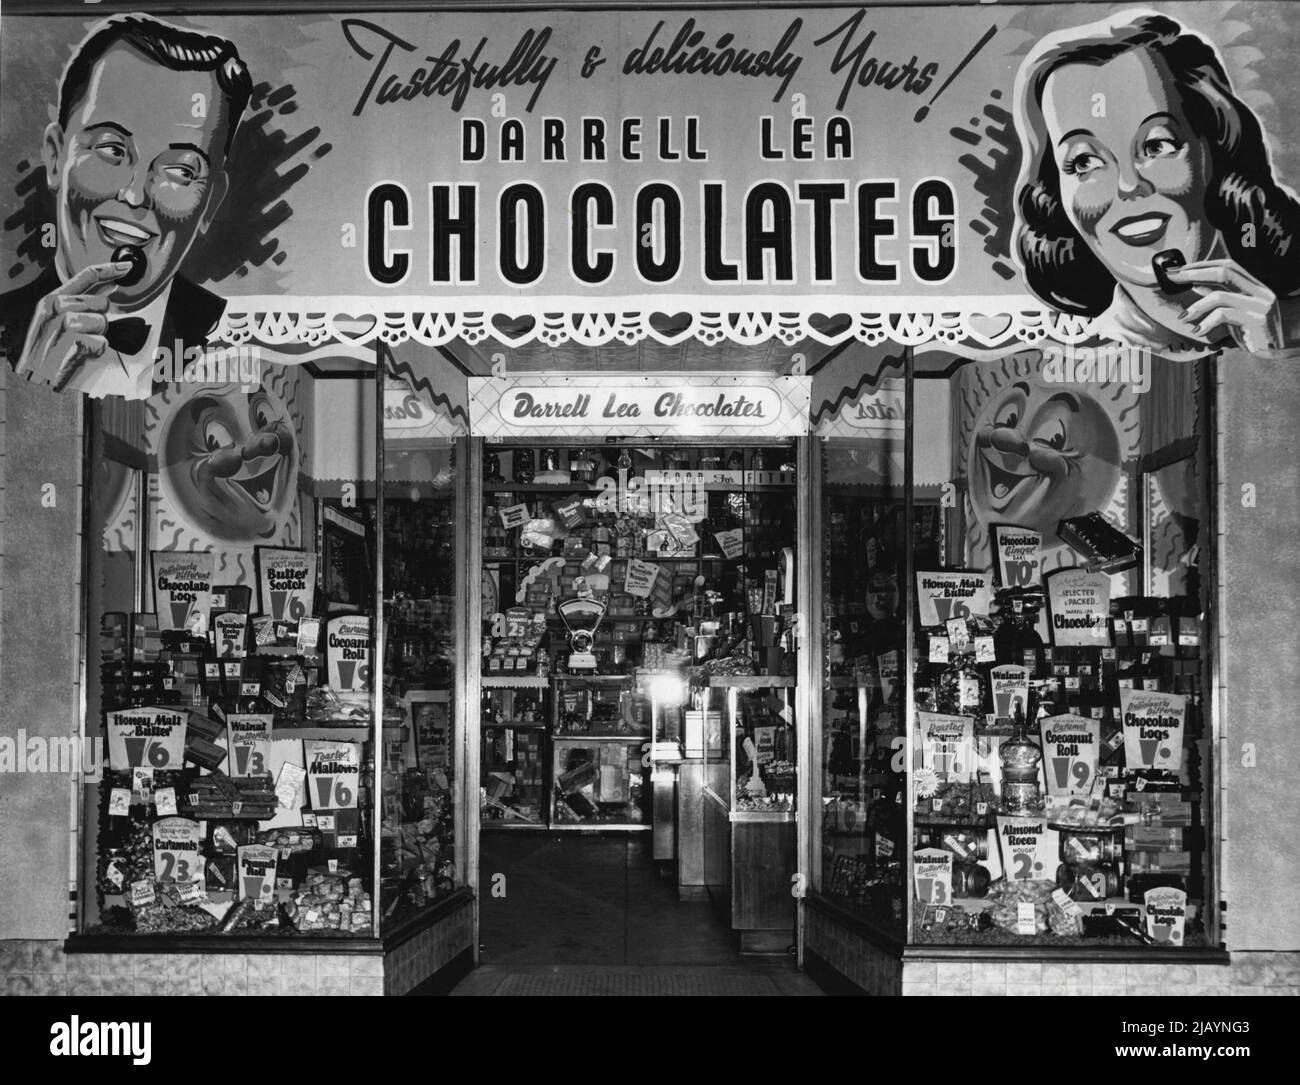 Darrell Lea, quindi (1952). Una delle grandi icone australiane, i cui negozi sono stati stravaganzas inconfondibili di merchandising lilly garish per più di 60 anni, ha deciso di prendere il salto nella pubblicità. La mossa è quella di impedire a Darrell Lea di diventare "un dinosauro", secondo le parole di un dirigente senior. Darrell Lea, che ha introdotto gli australiani alle gioie di mangiare chockies miste indietro nel 1927 (e che forse ha mantenuto una generazione di dentisti australiani nel commercio), può ancora andare forte, ma è preoccupato che la sua immagine iconica può essere vulnerabile. Giugno 1, 1952. (Foto di Howard ha Foto Stock